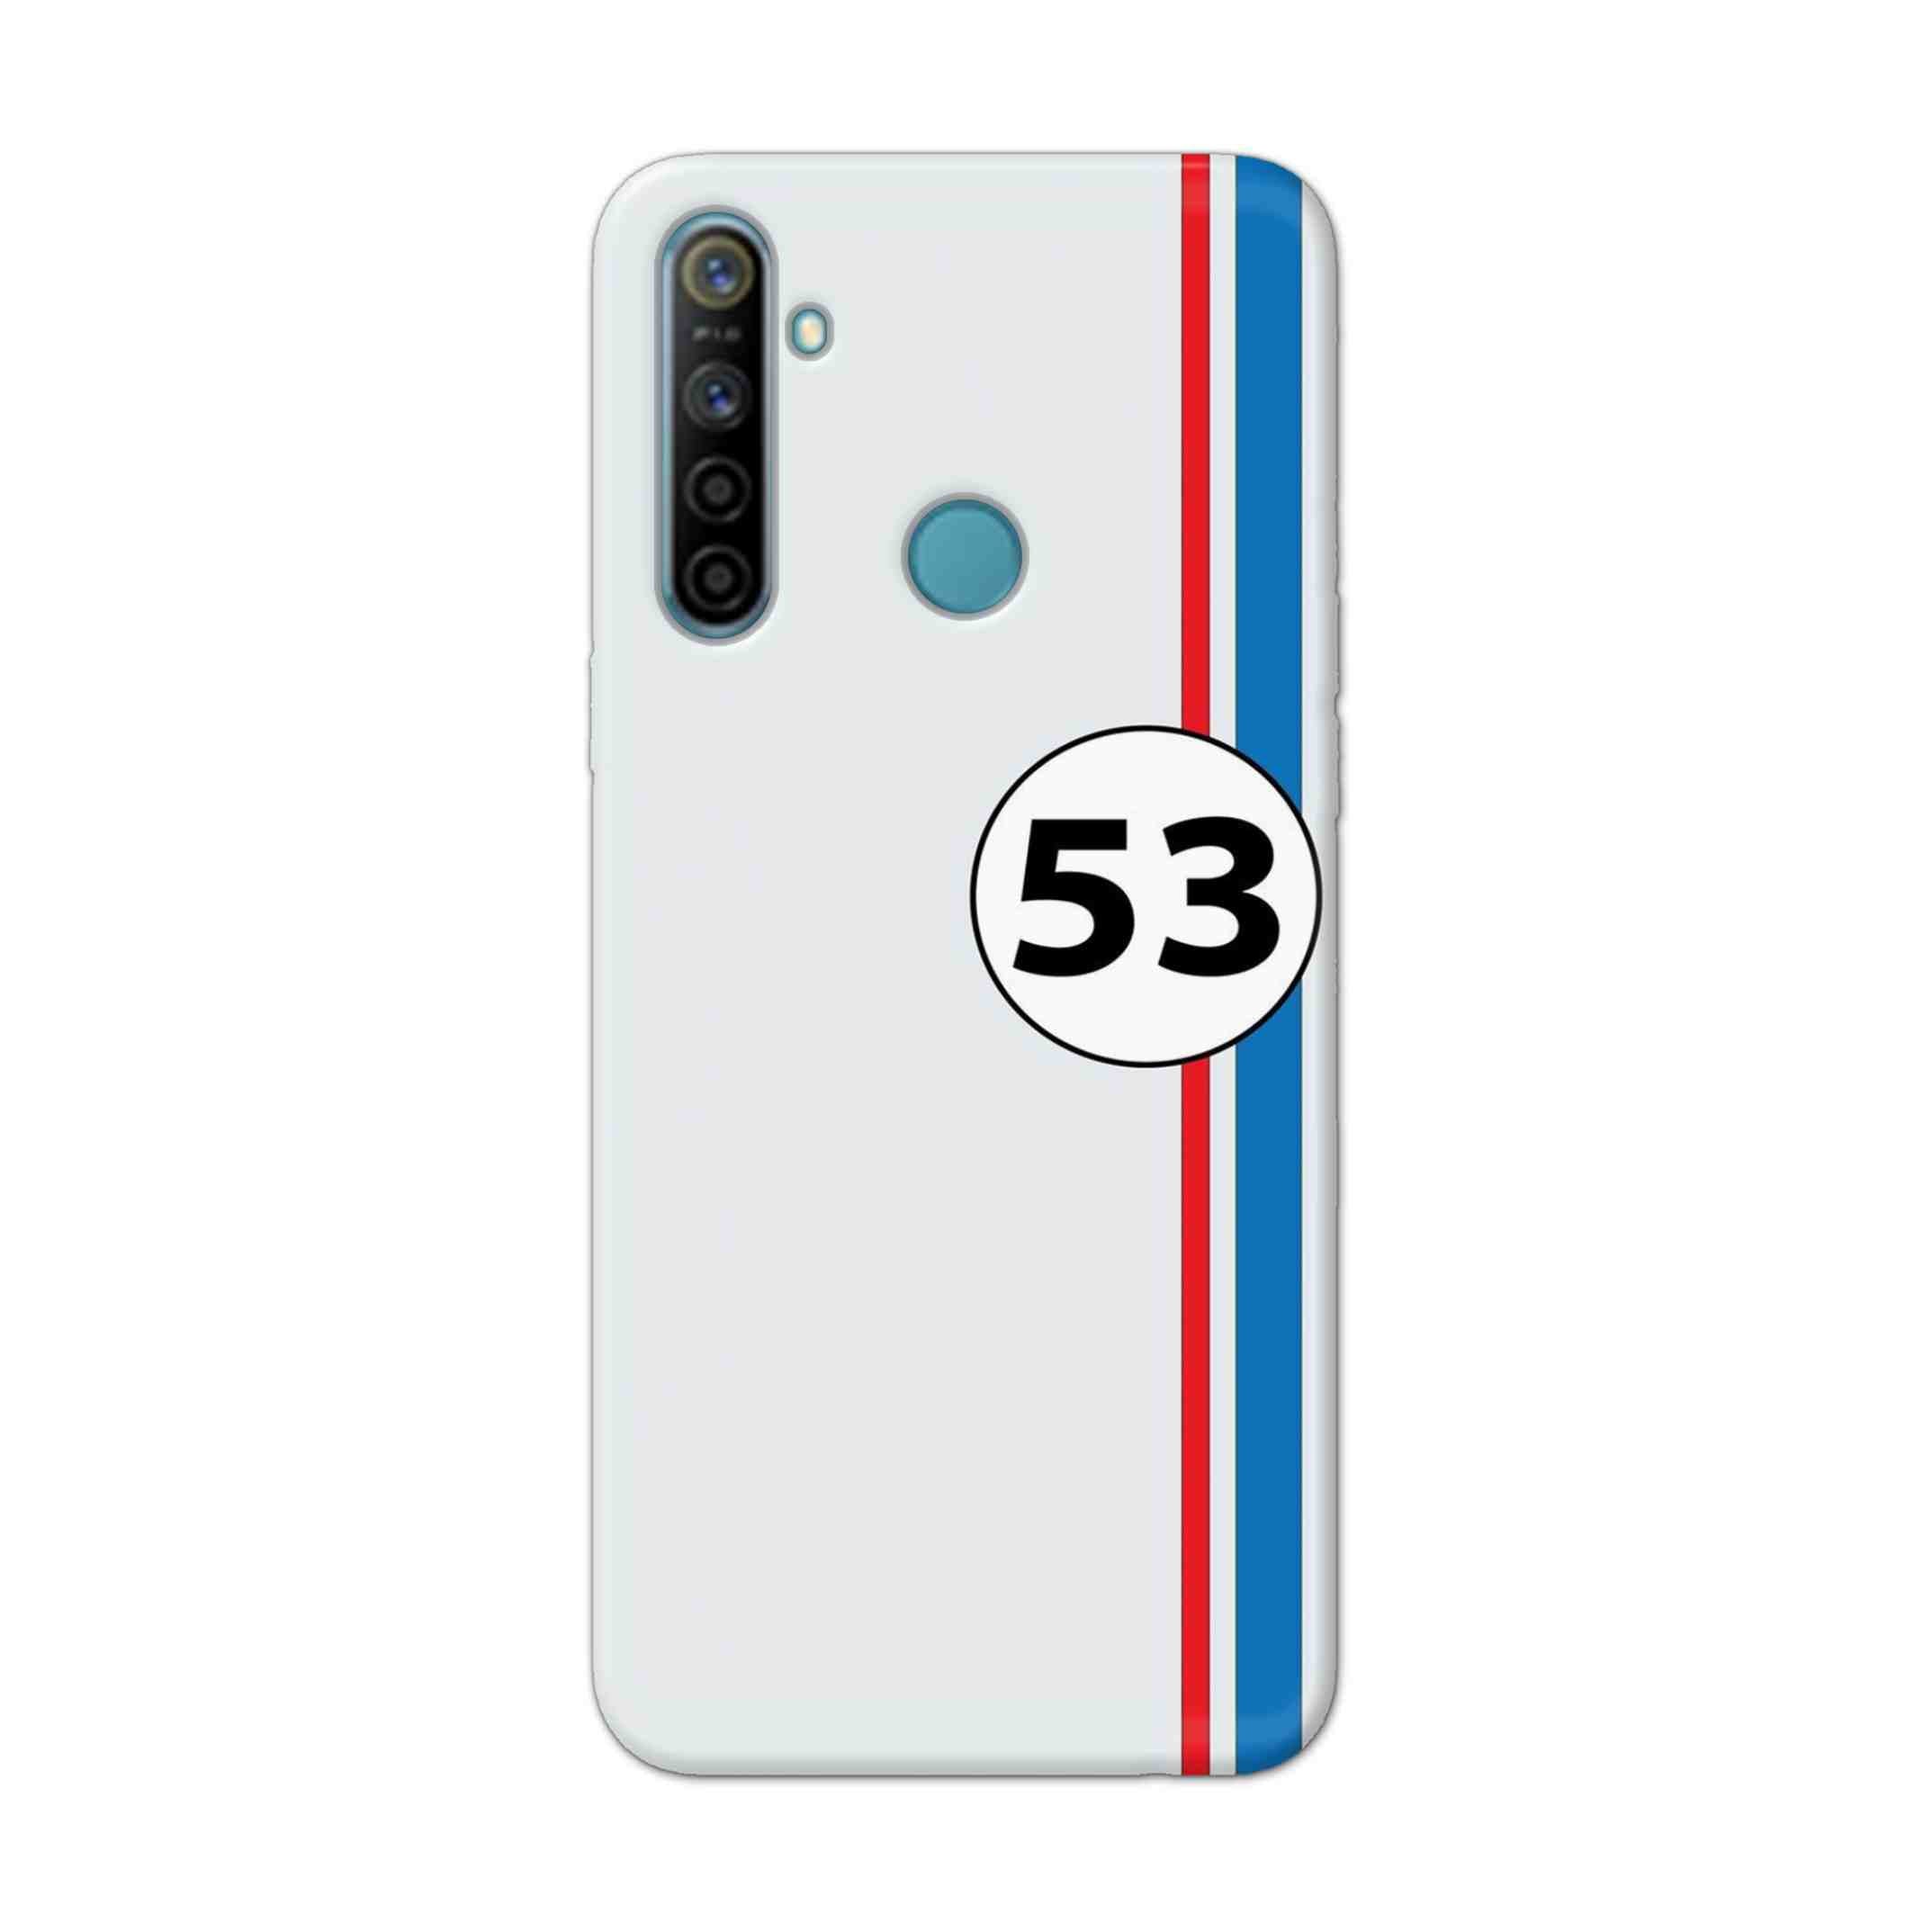 Buy 53 Hard Back Mobile Phone Case Cover For Realme 5i Online